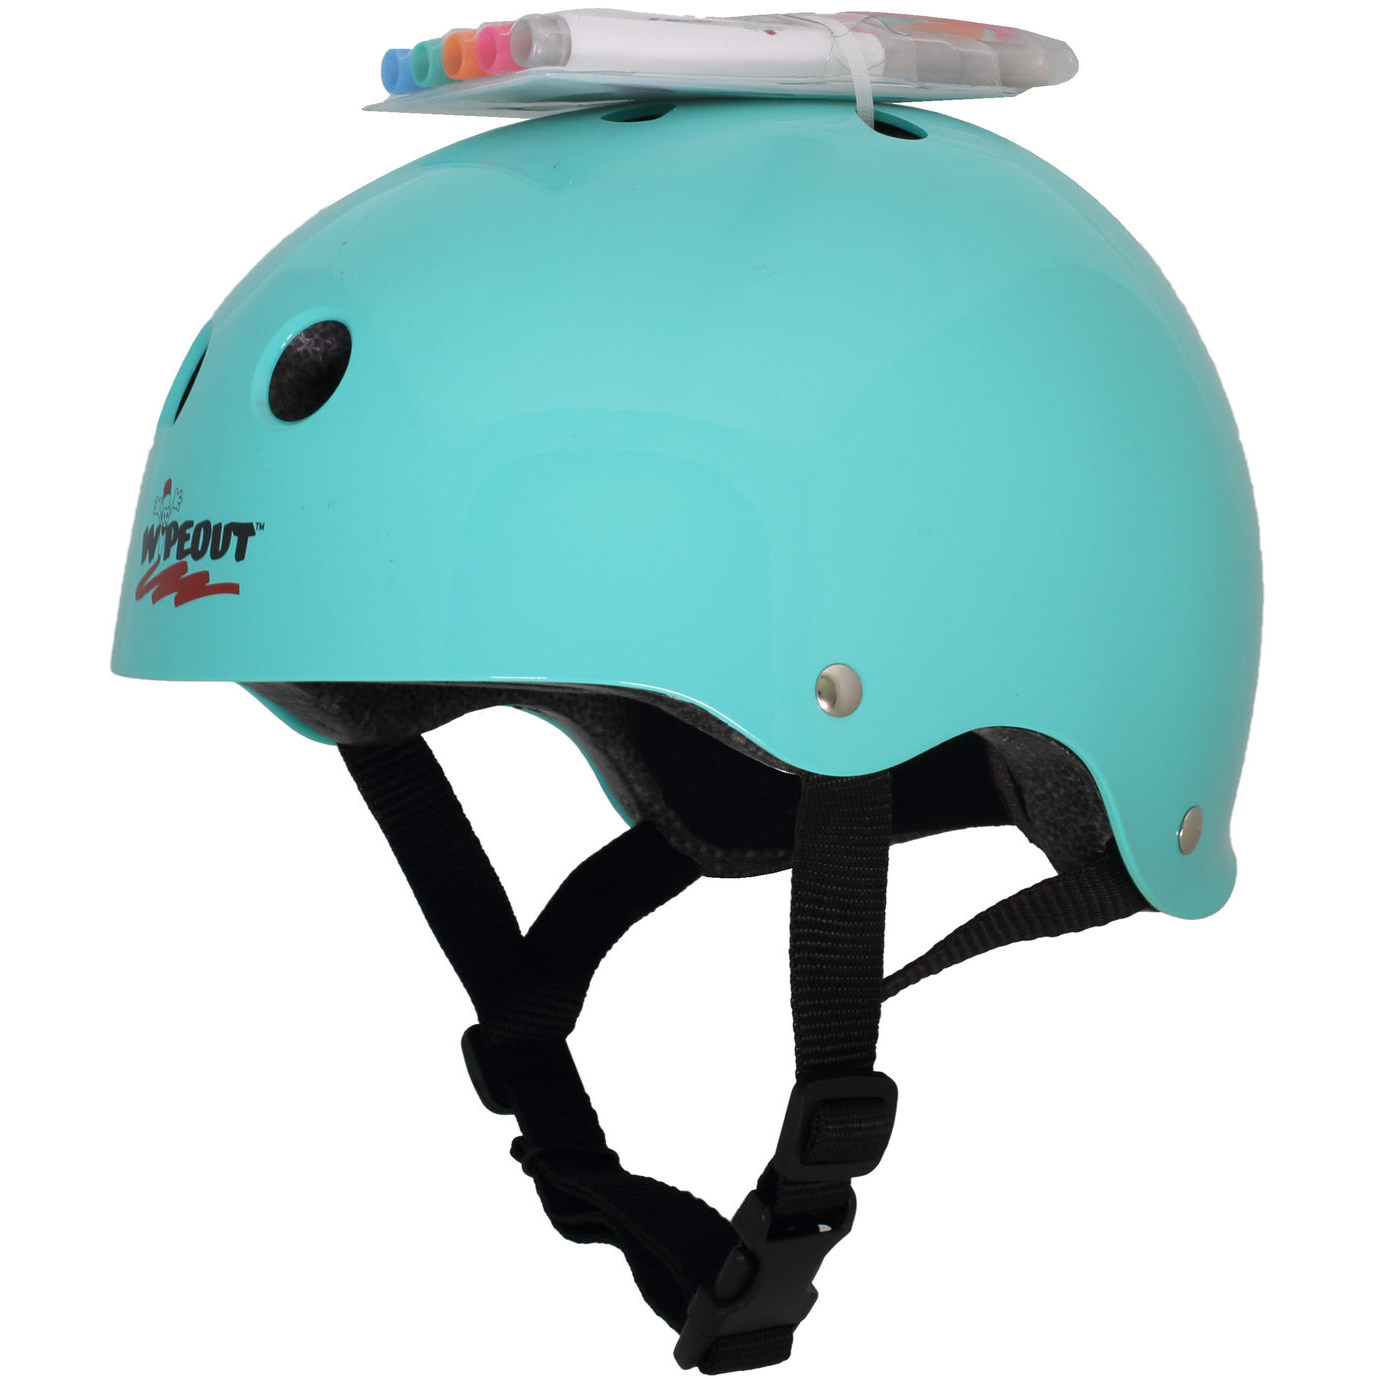 Шлем защитный спортивный WIPEOUT Teal Blue с фломастерами и трафаретами размер M 5+ обхват головы 49-52 см - фото 4